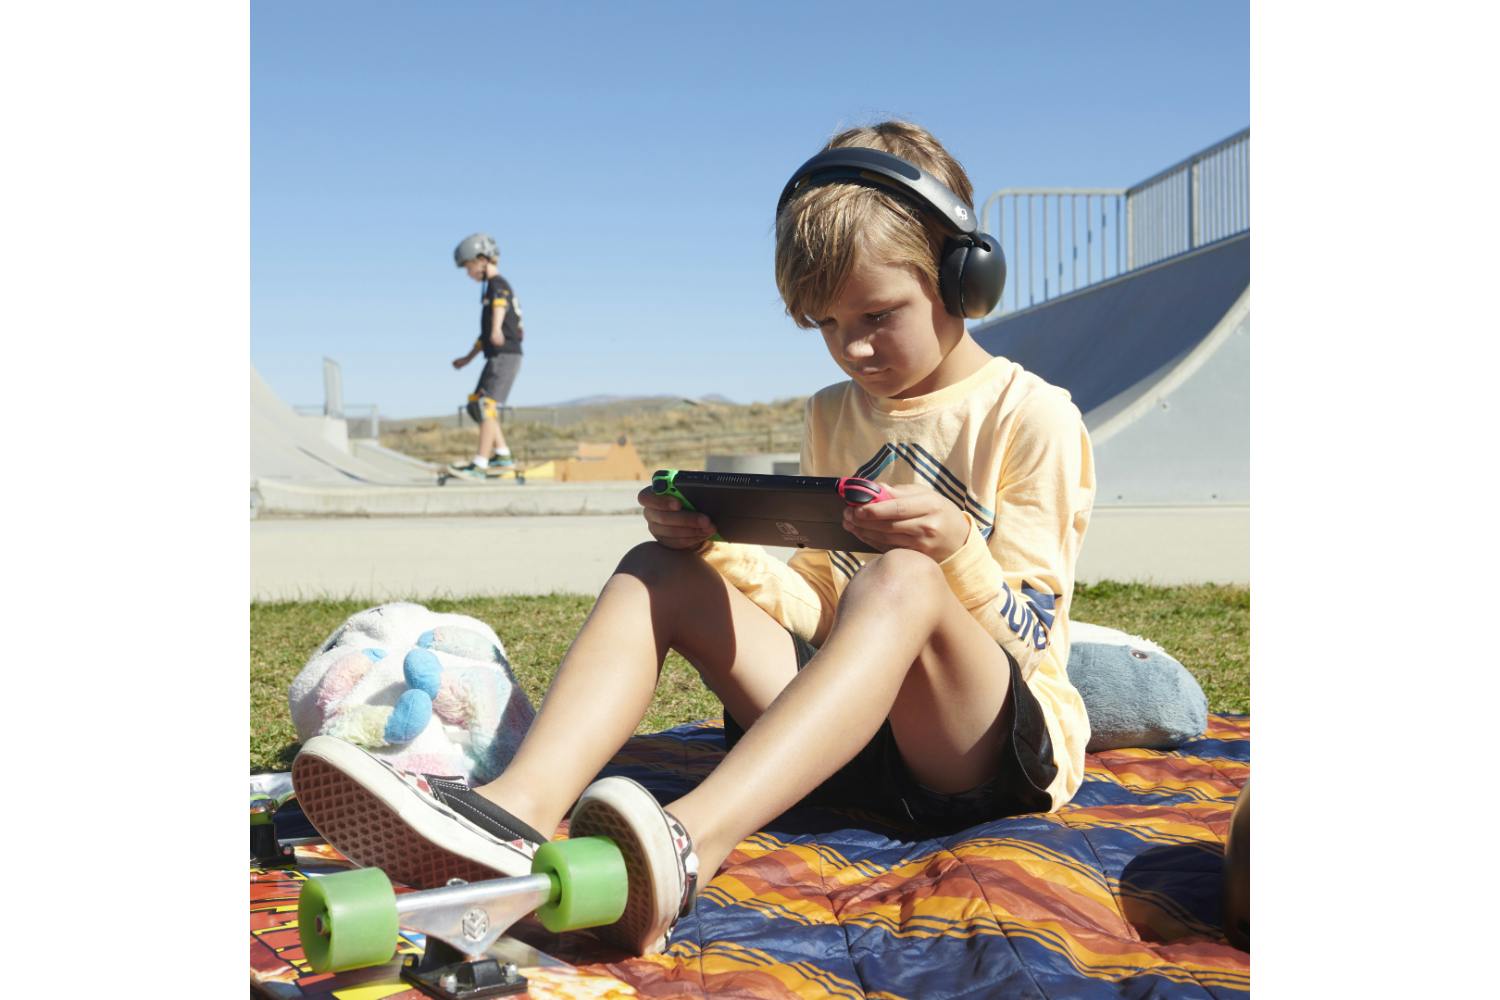 Skullcandy Grom Over-Ear Wireless Kids Headphone | Black